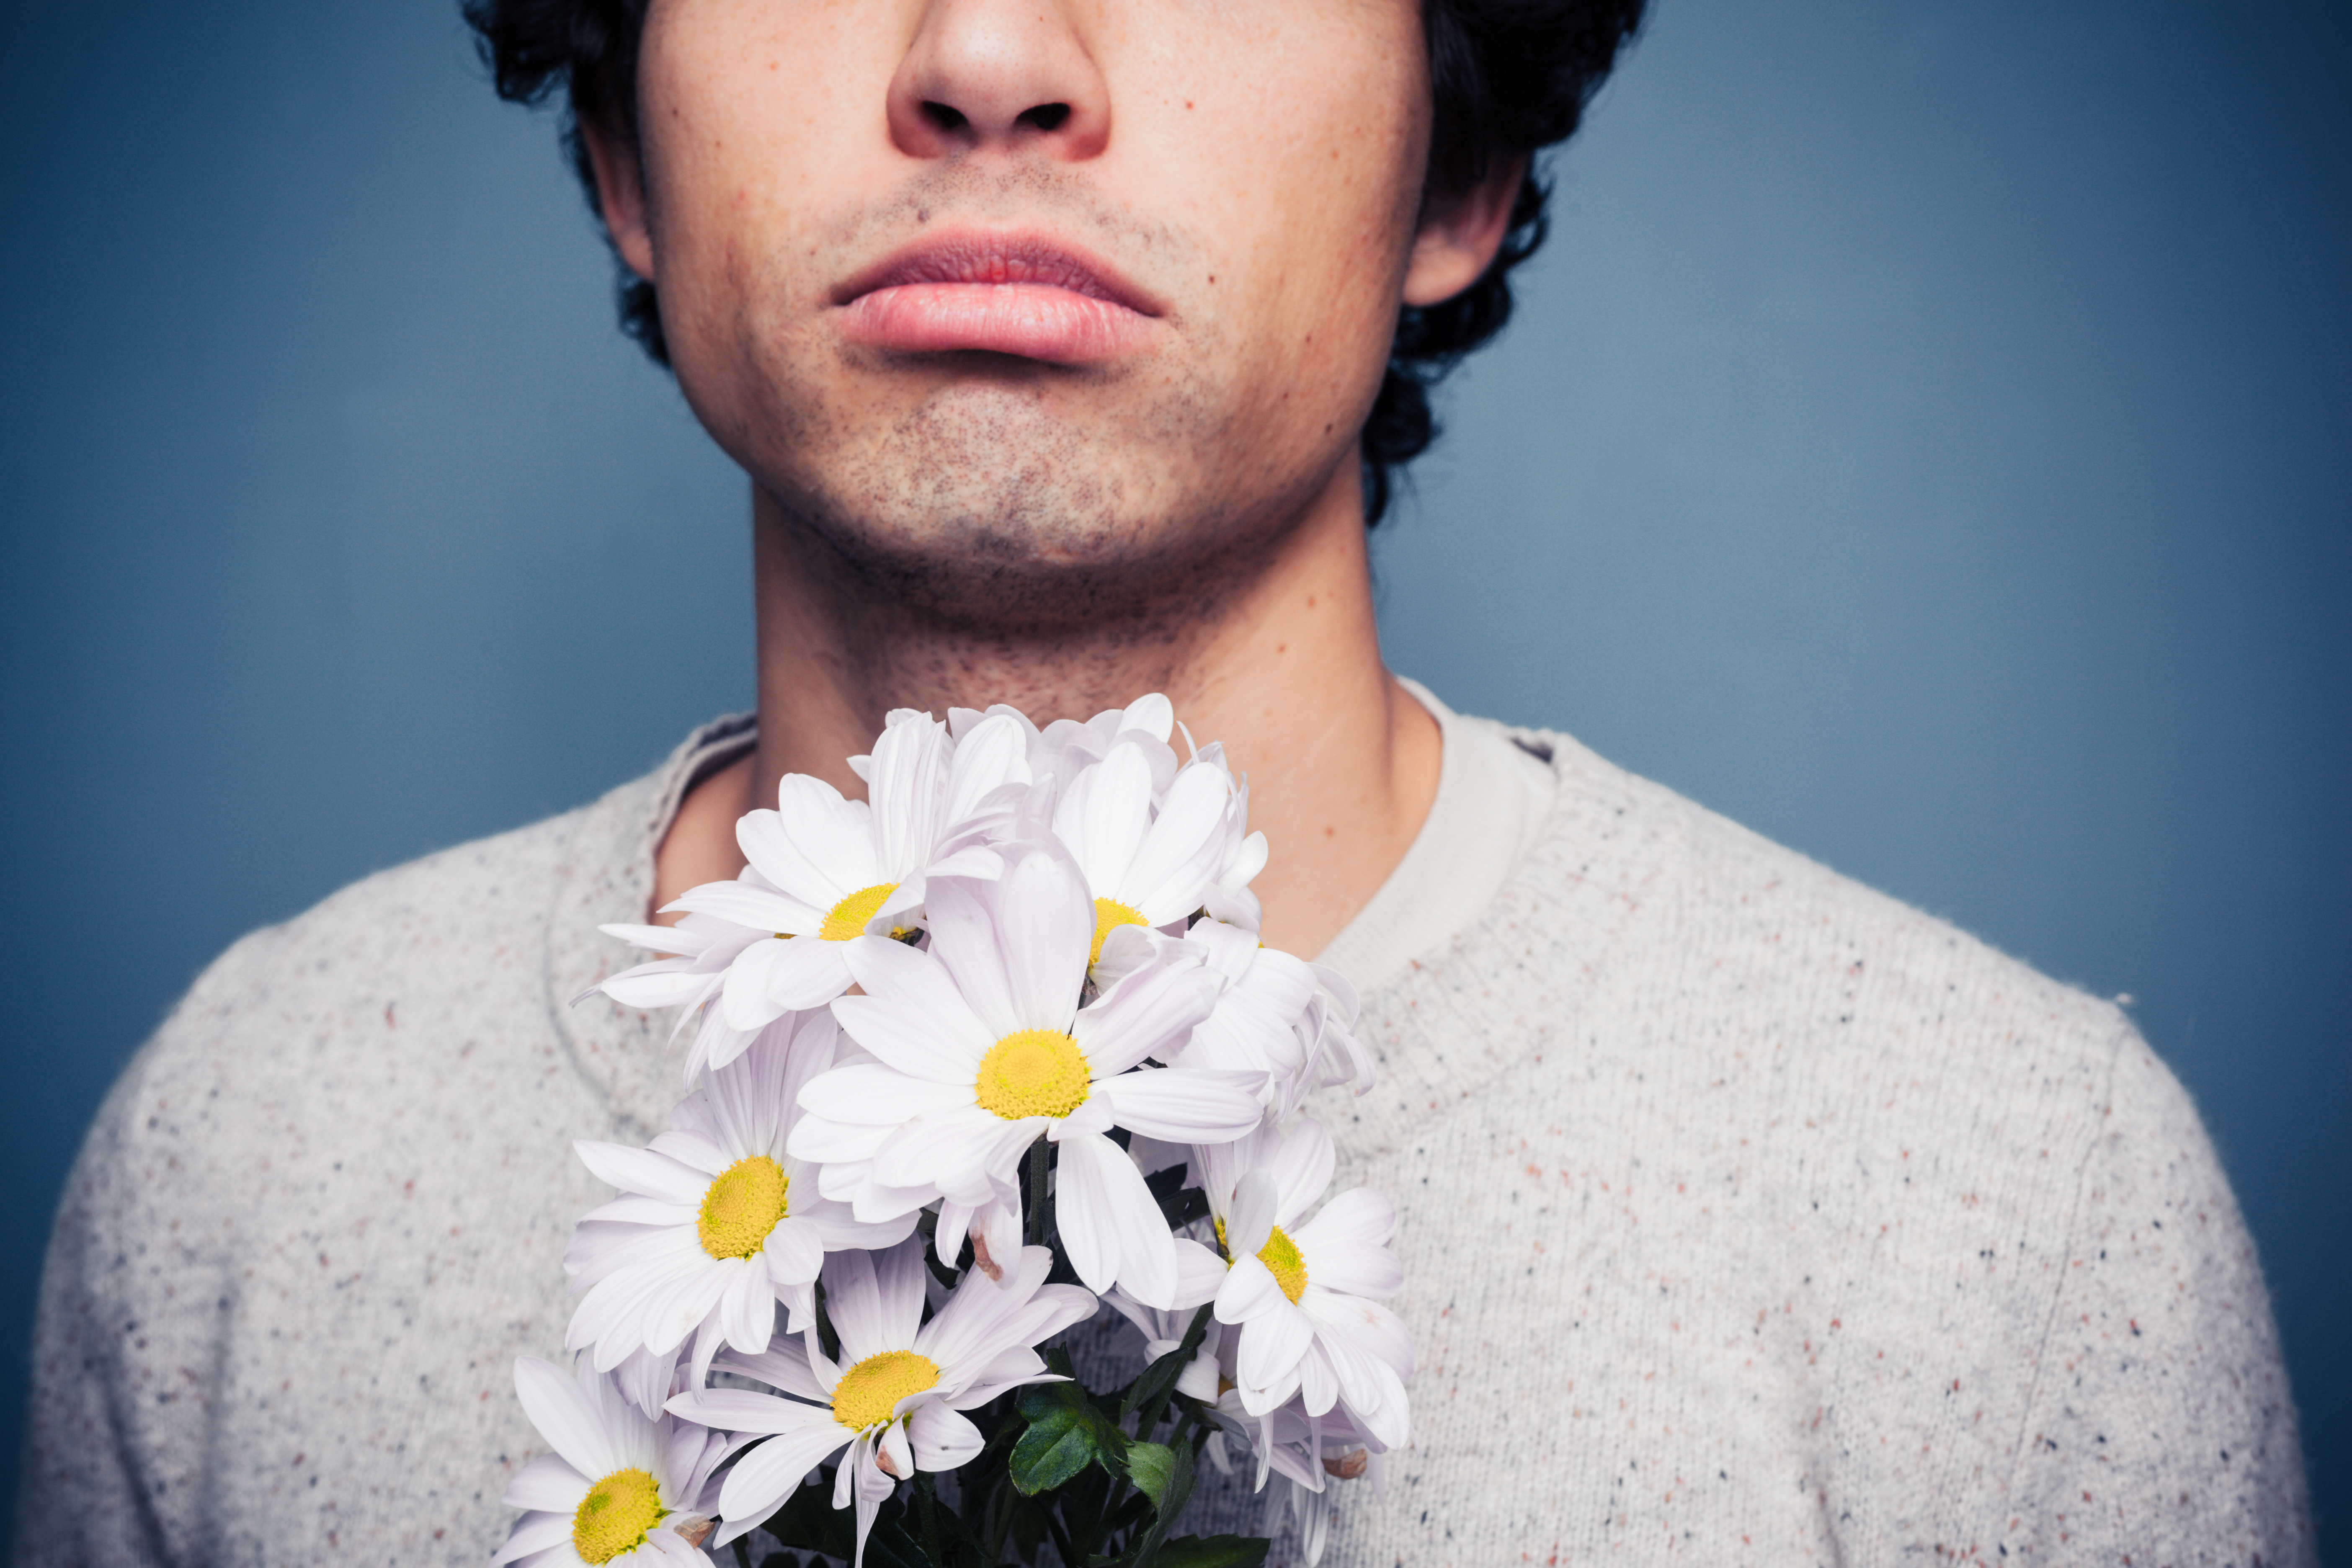 Un homme tenant des fleurs | Source : Shutterstock